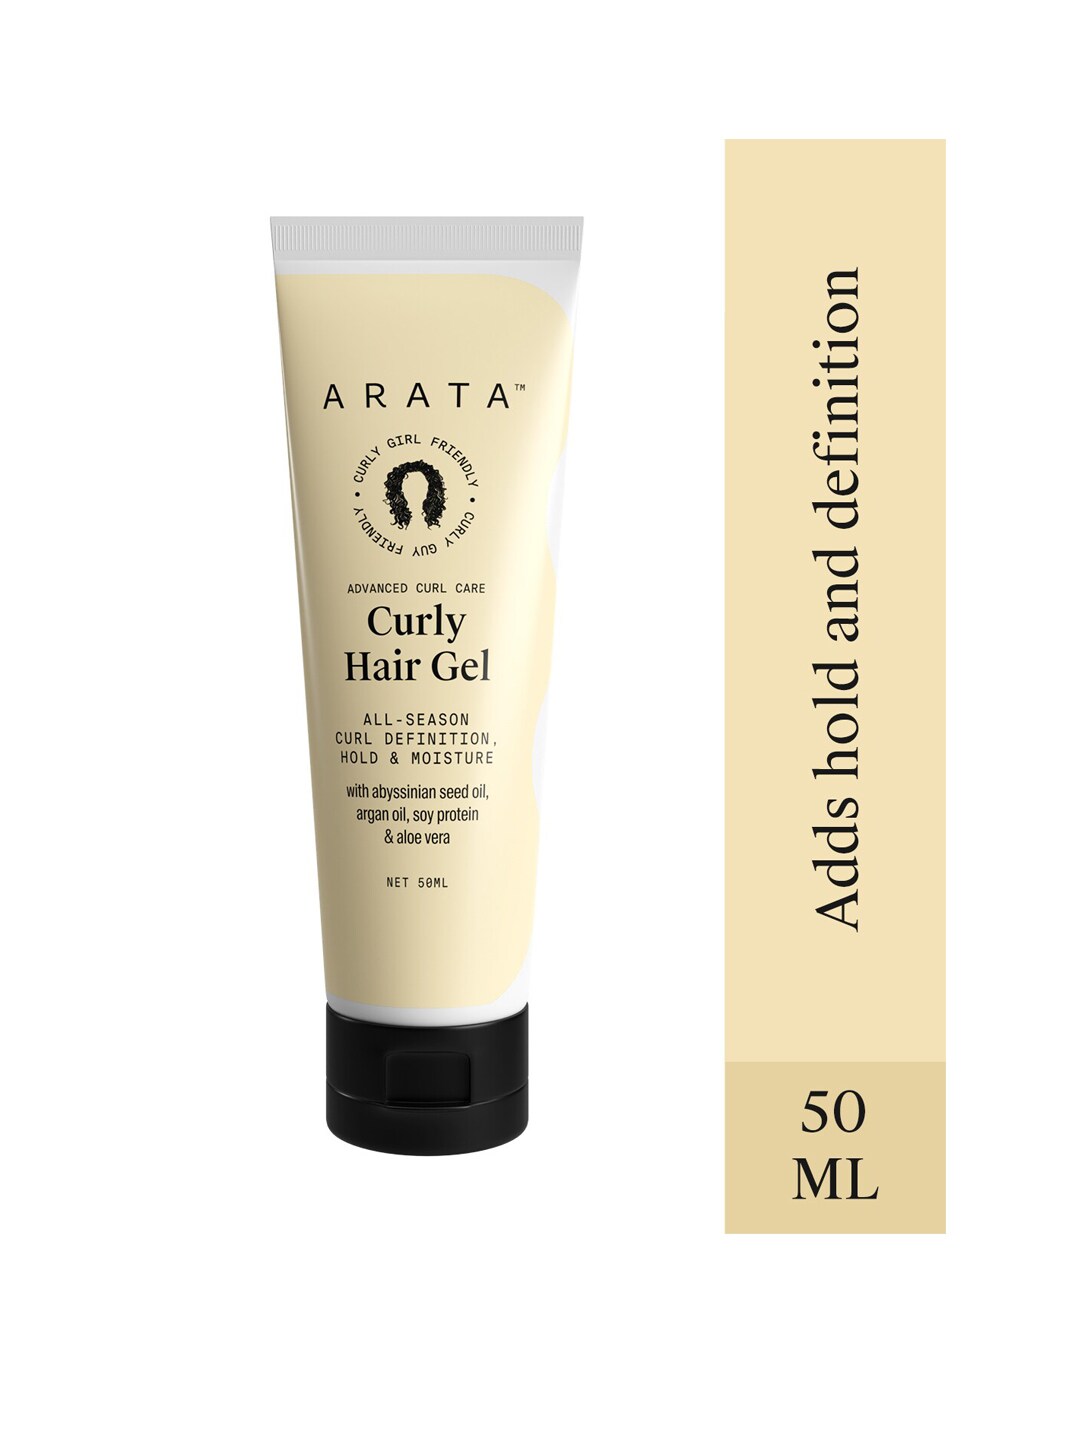 ARATA Advanced Curl Care Hair Gel 50ml